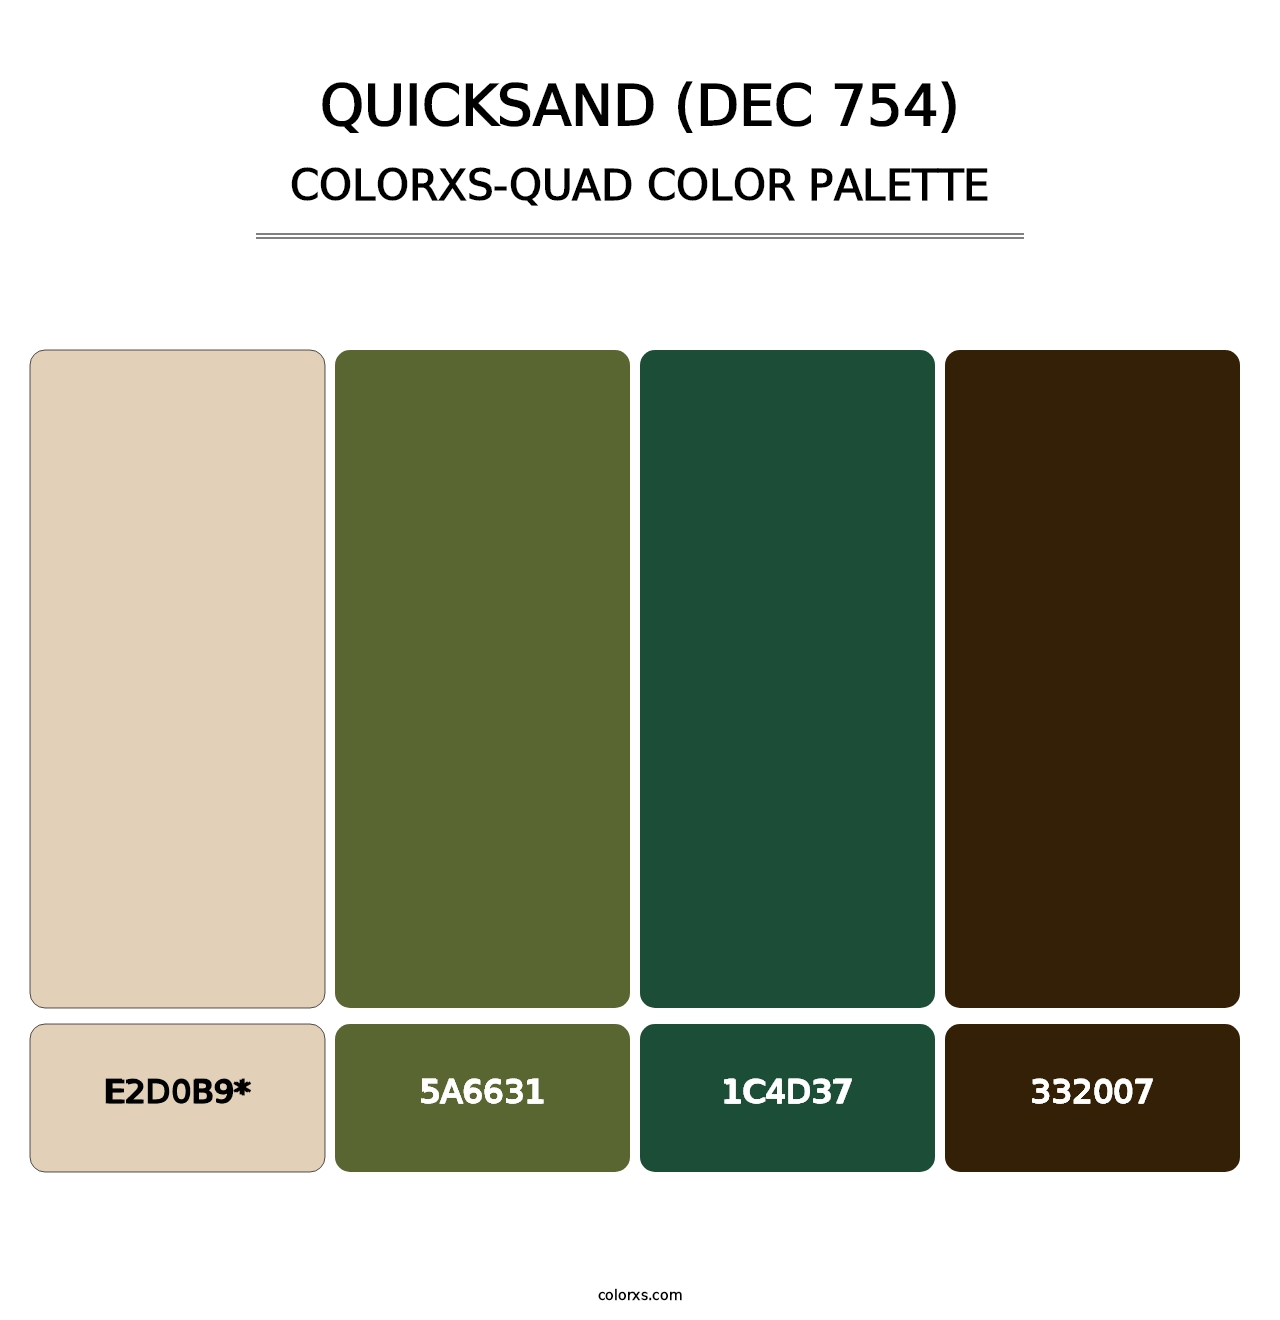 Quicksand (DEC 754) - Colorxs Quad Palette